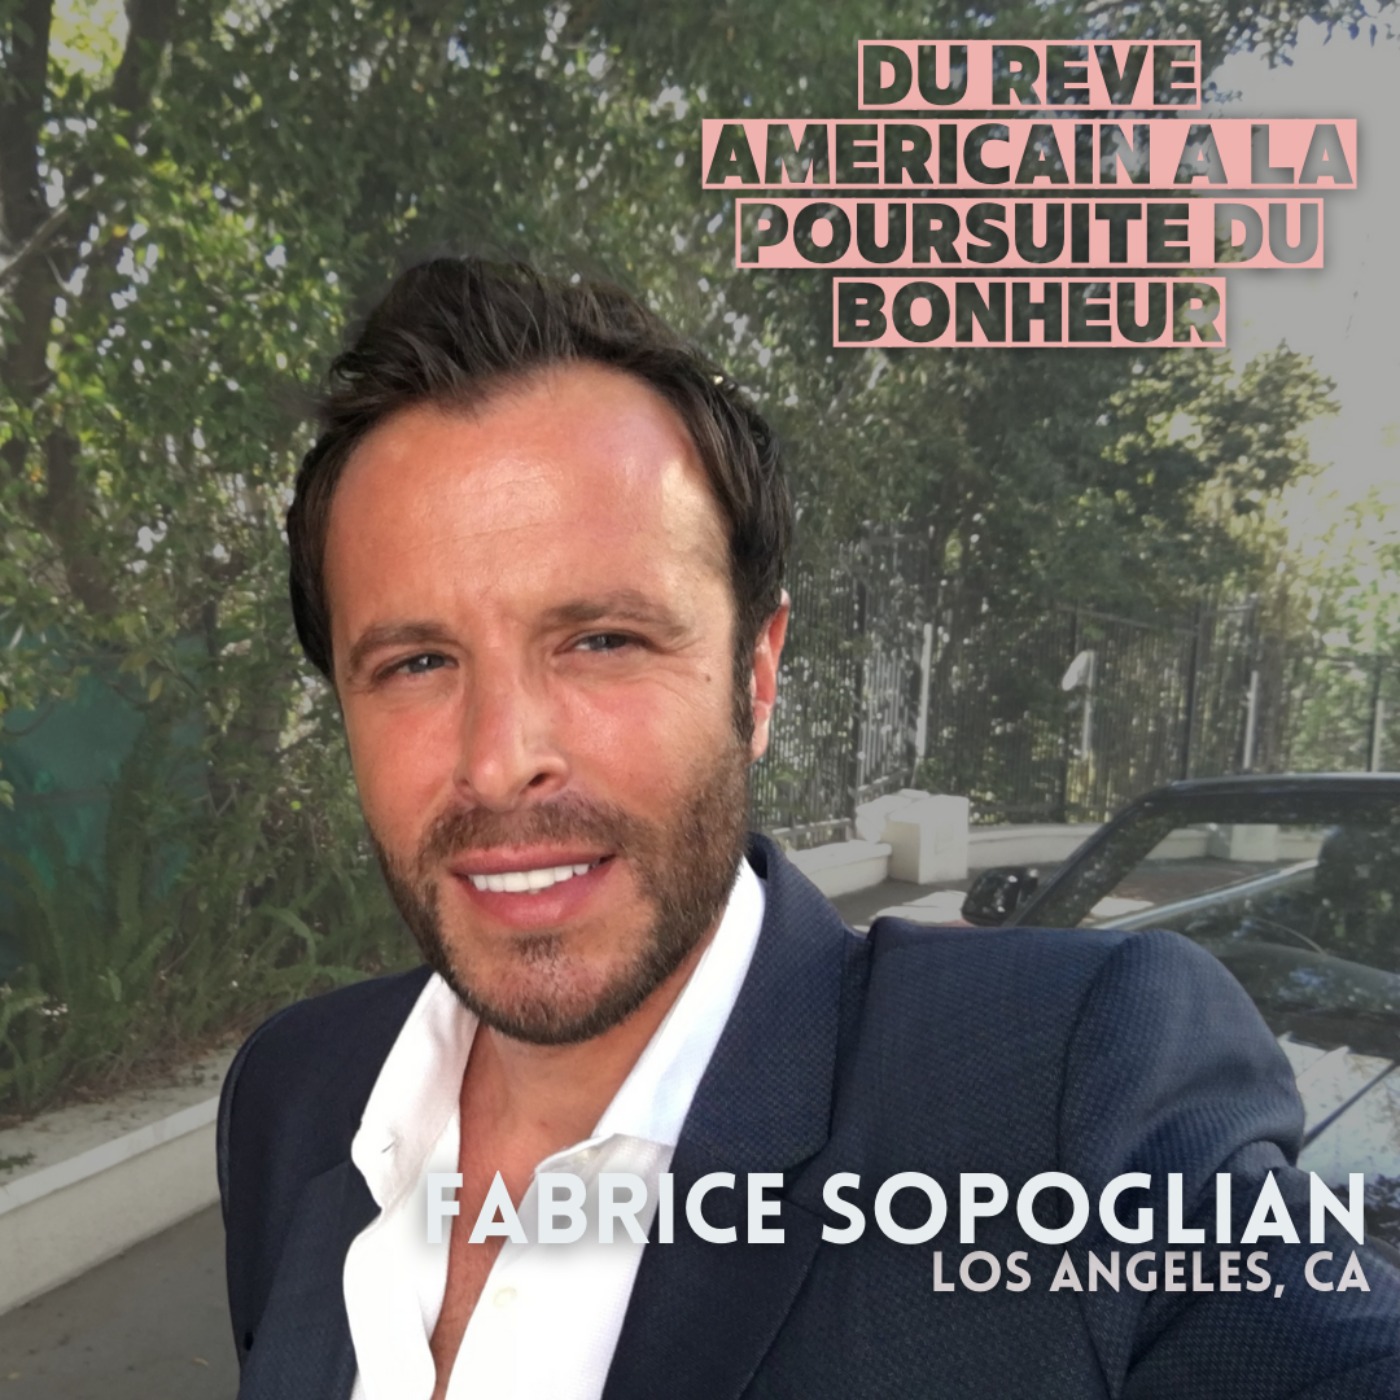 Fabrice Sopoglian (Los Angeles) : ≪le rêve Américain c'est comme un combat en 12 rounds≫